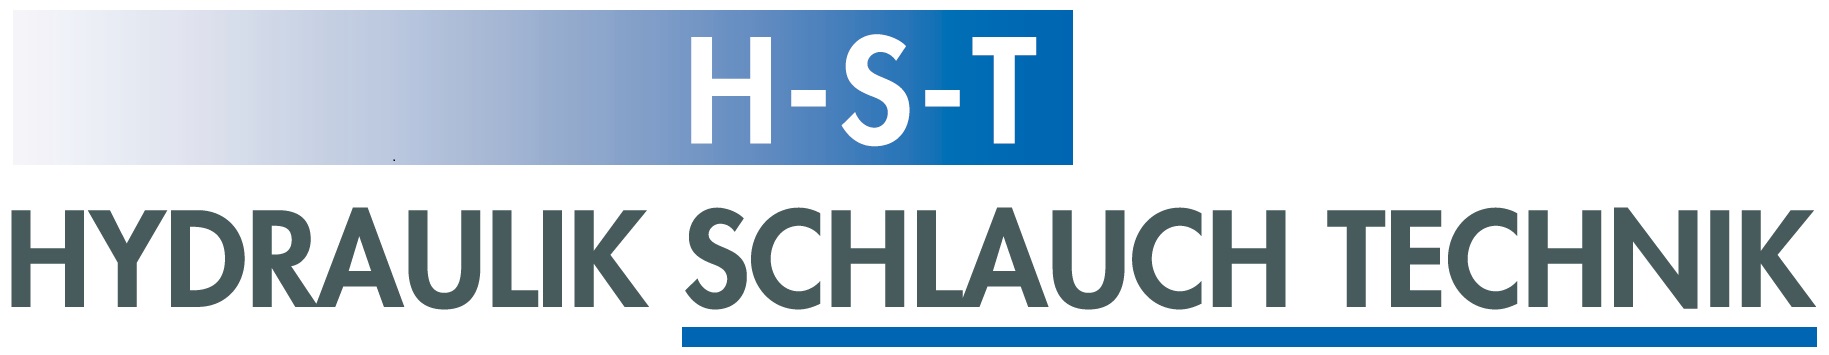 HST Hydraulik Logo